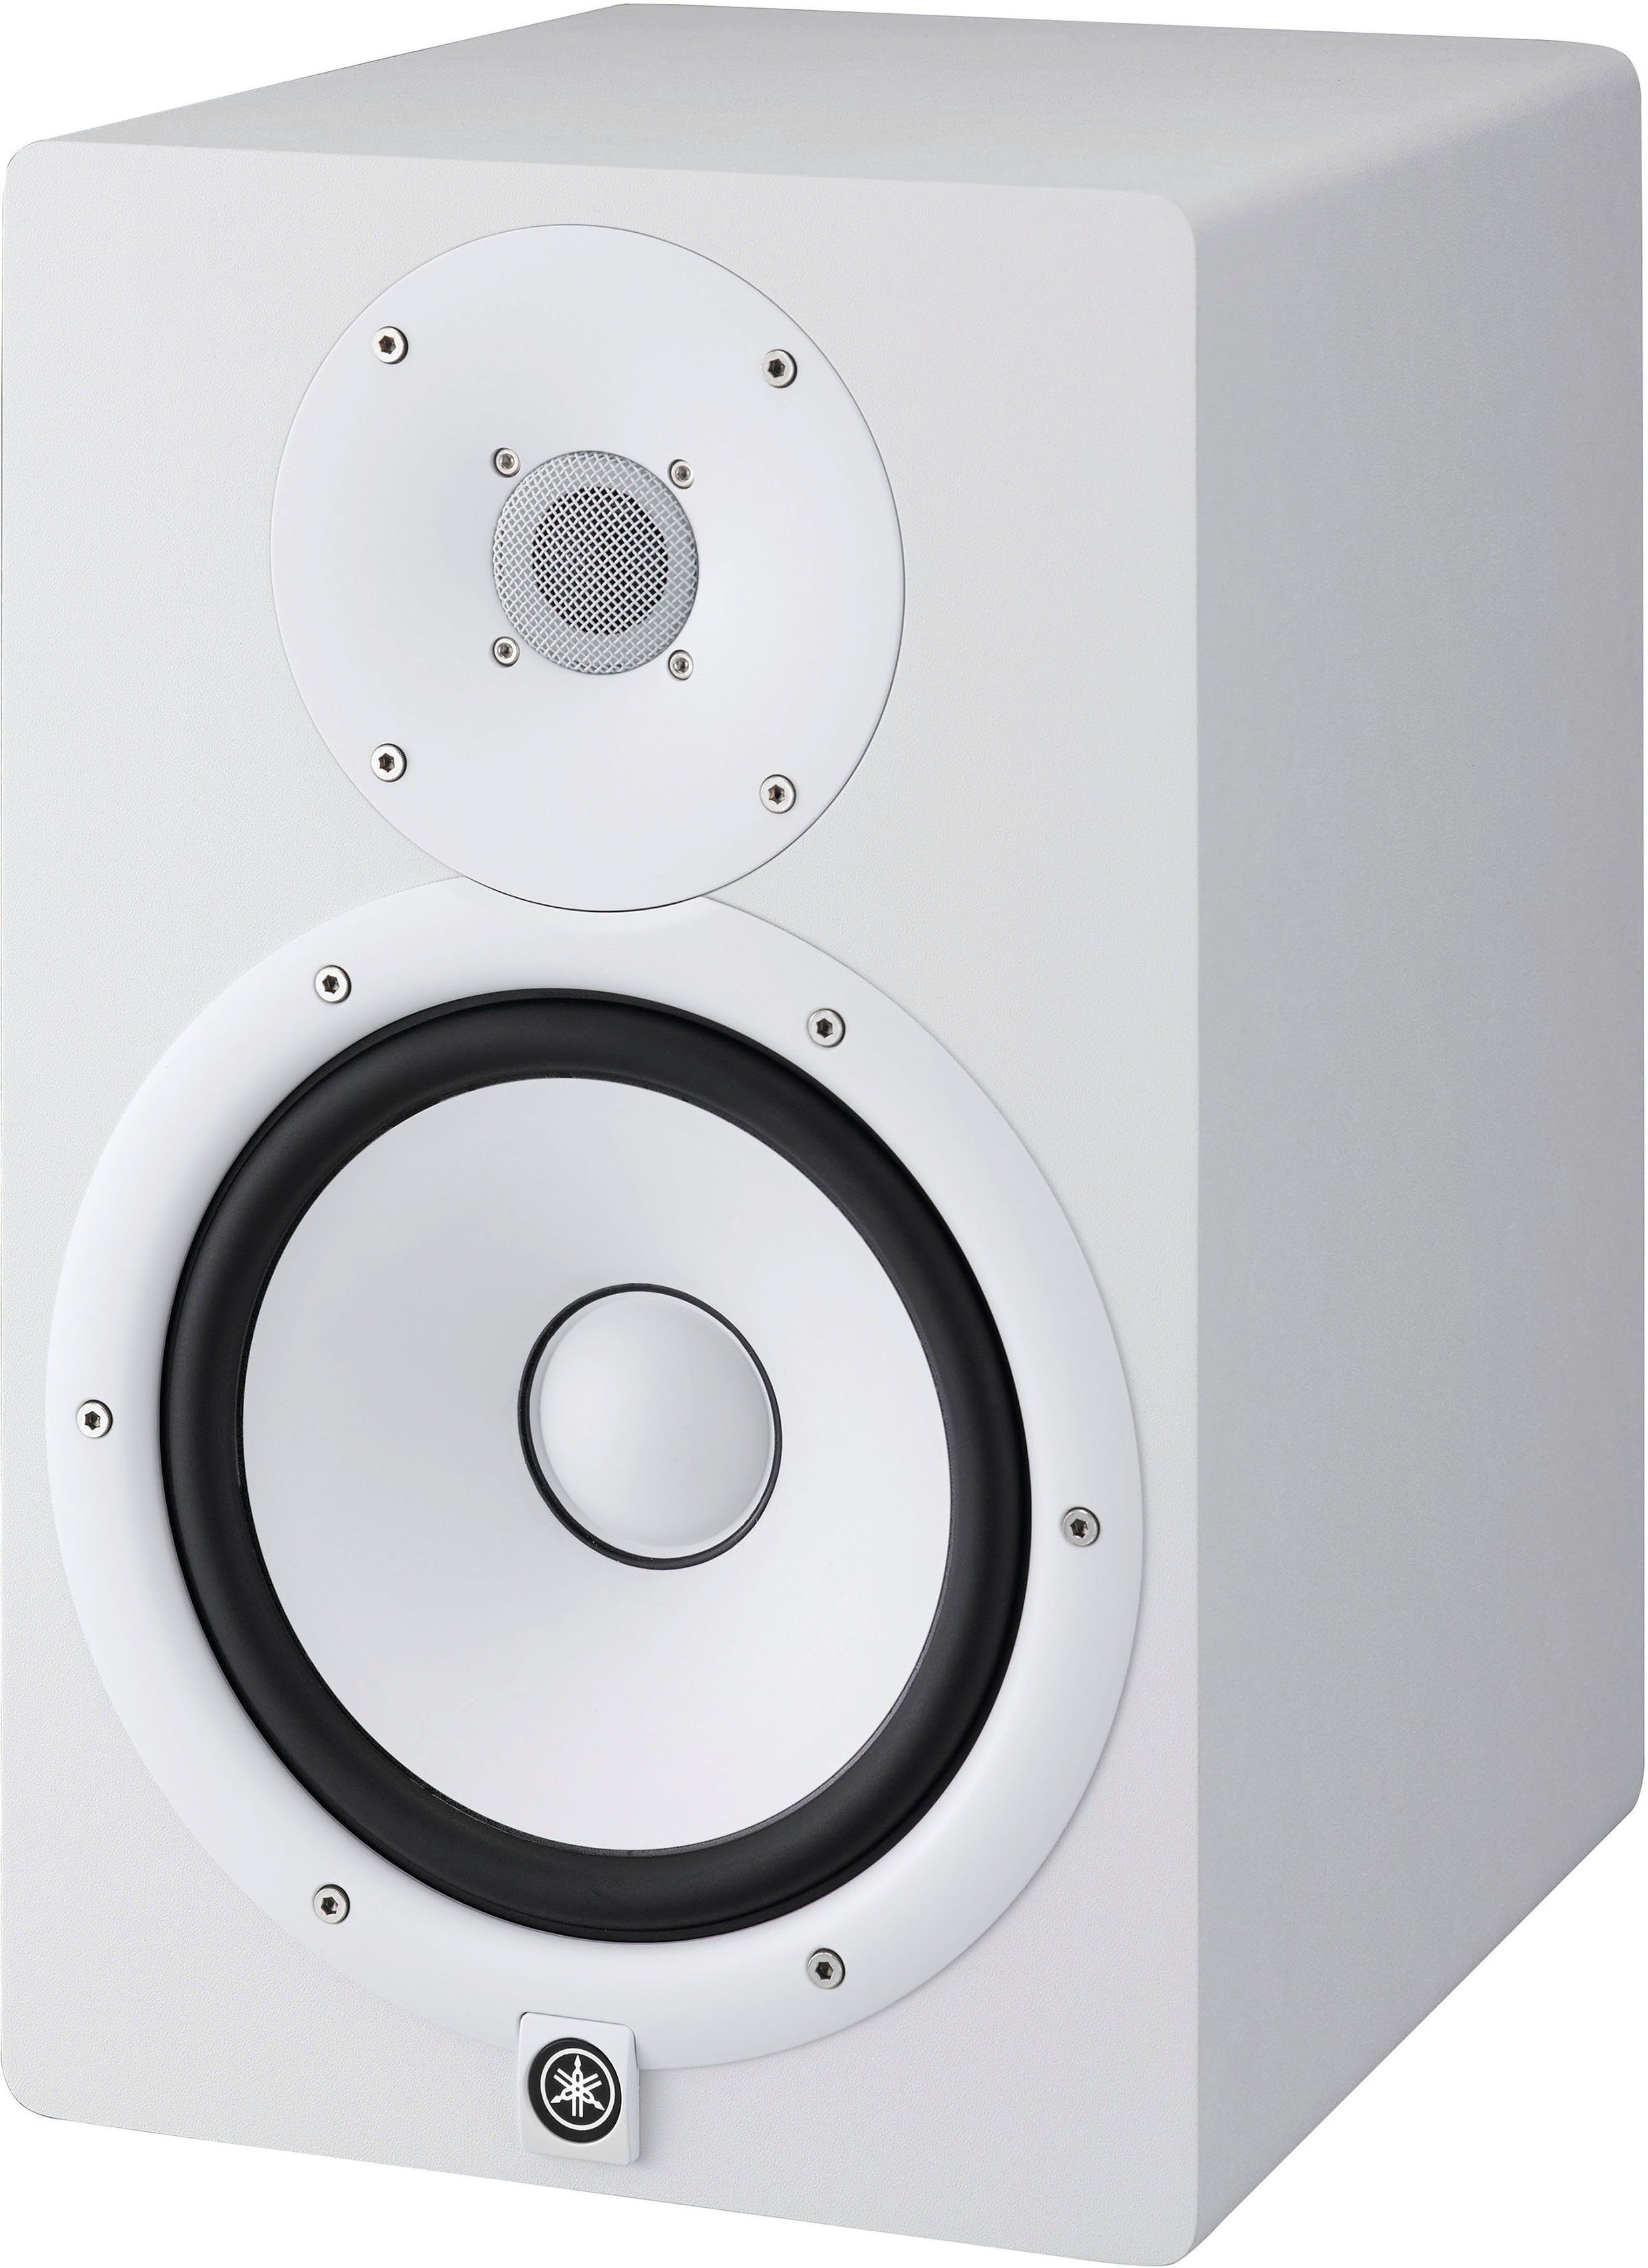 Yamaha authentische und Wiedergabe) (hochauflösender Klang Studio Monitor Box Lautsprecher HS8W